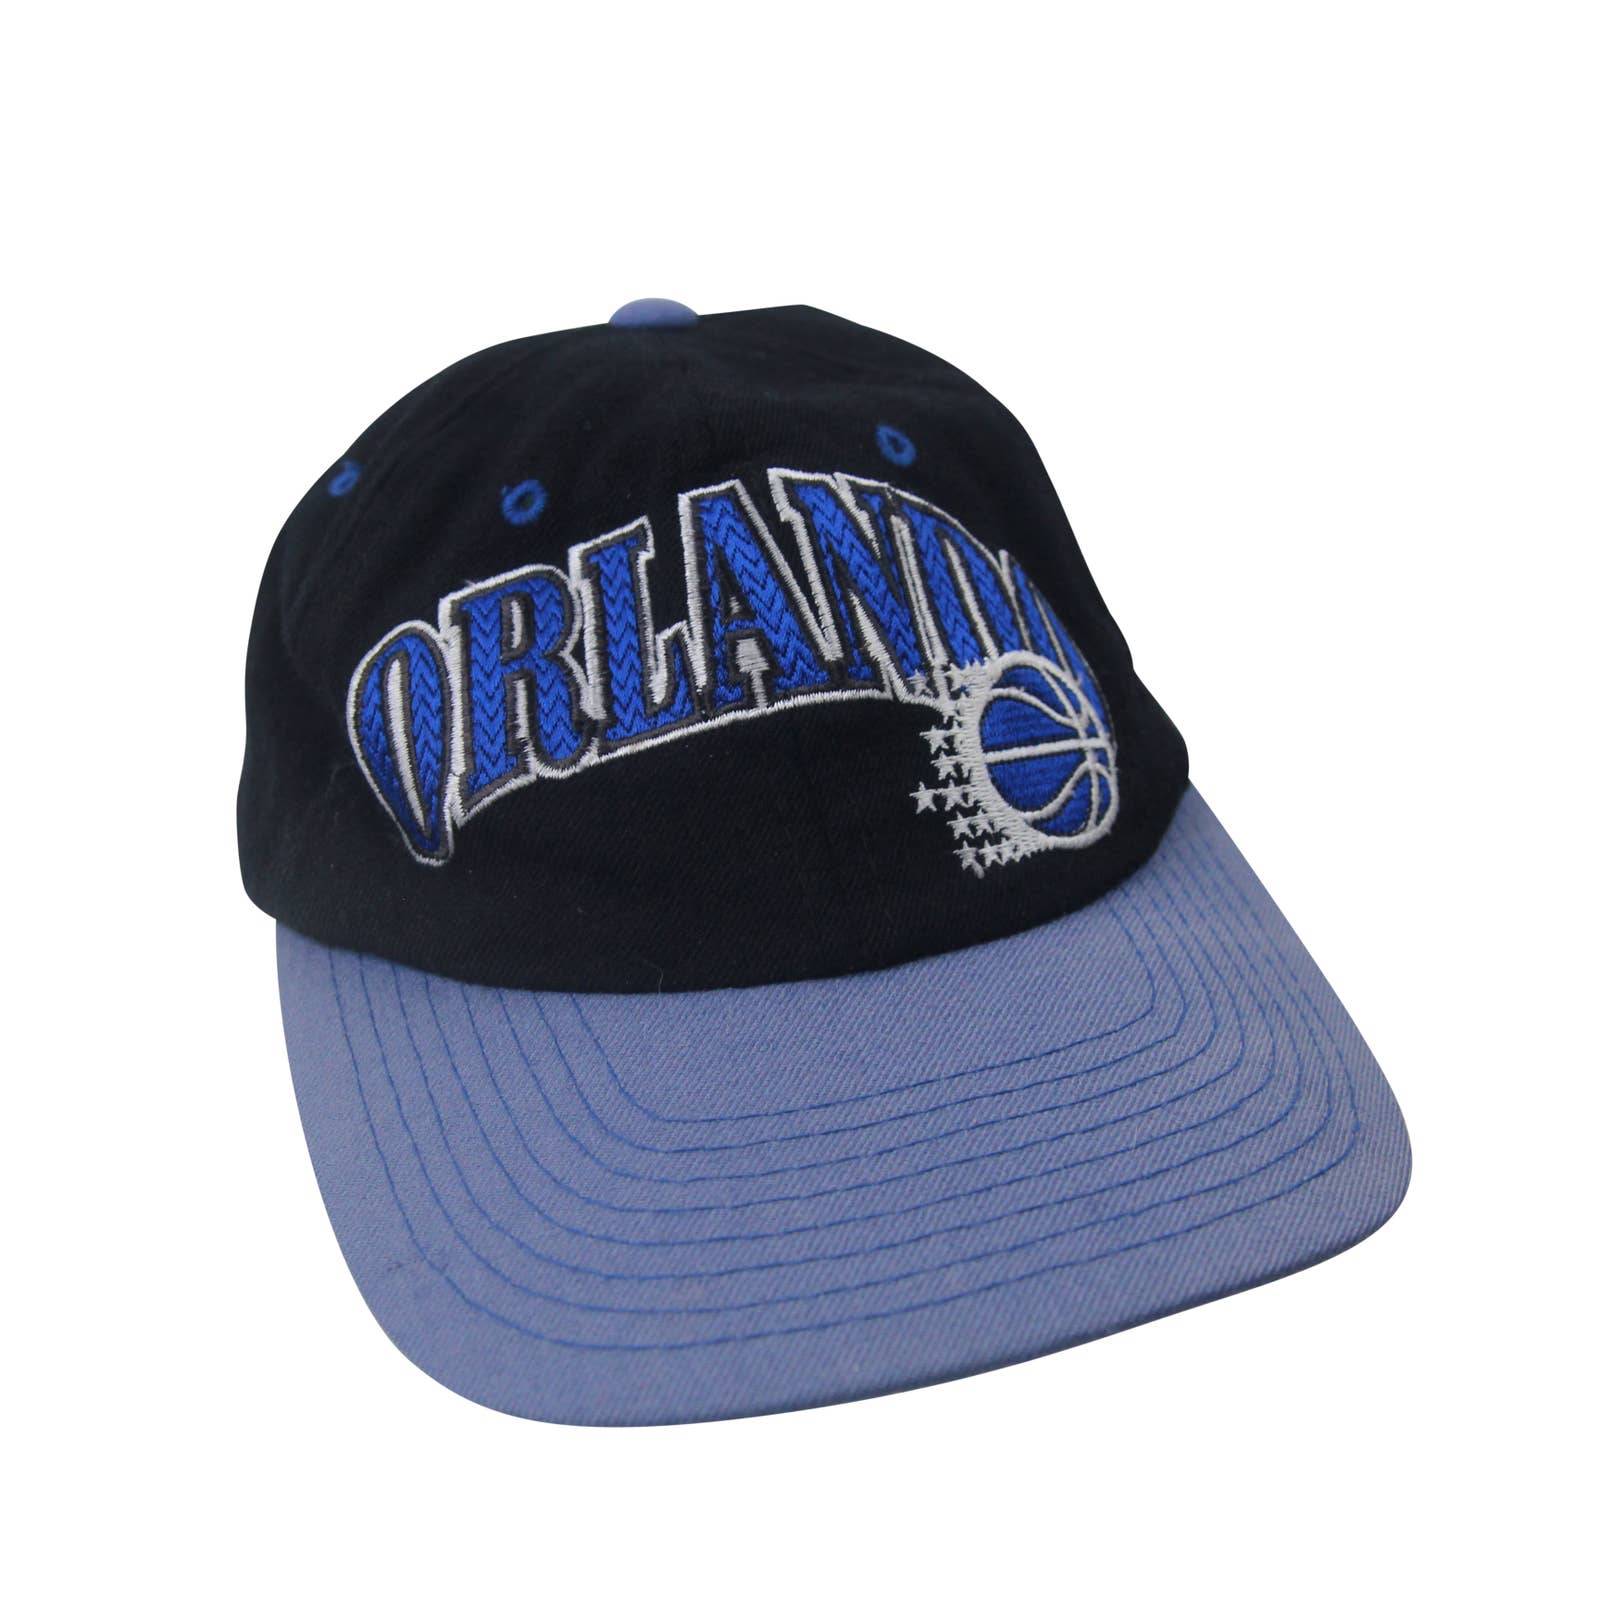 Vintage Orlando Magic Snapback Cap